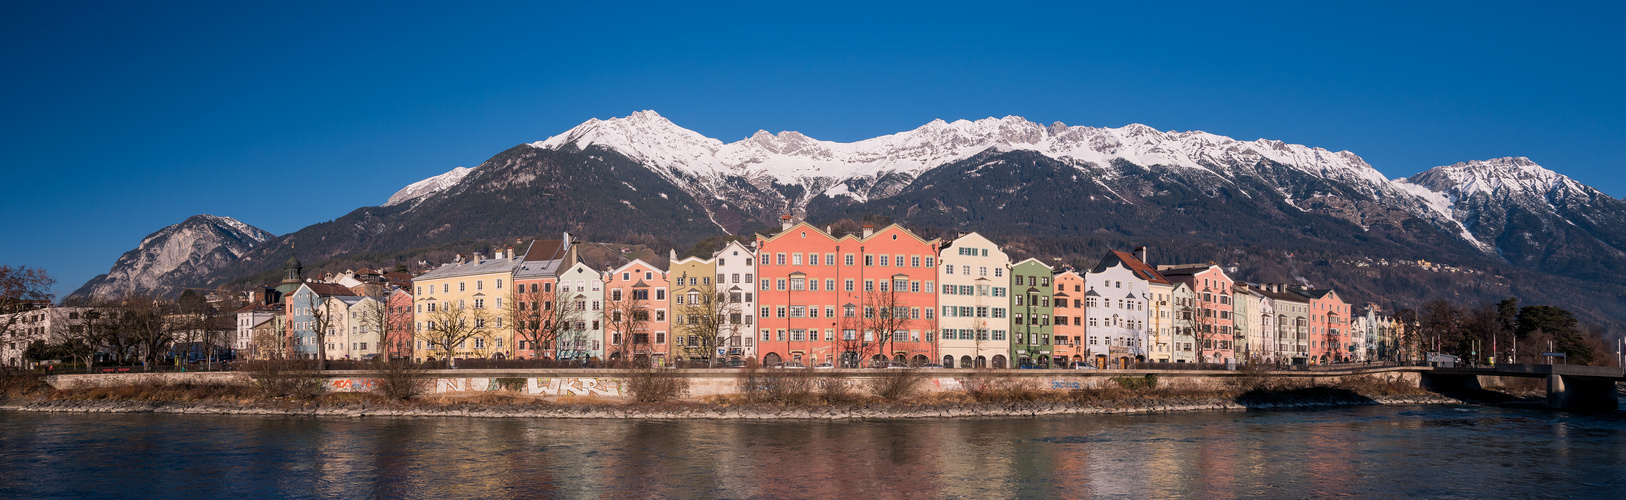 Innsbruck - Stadtteil Hötting